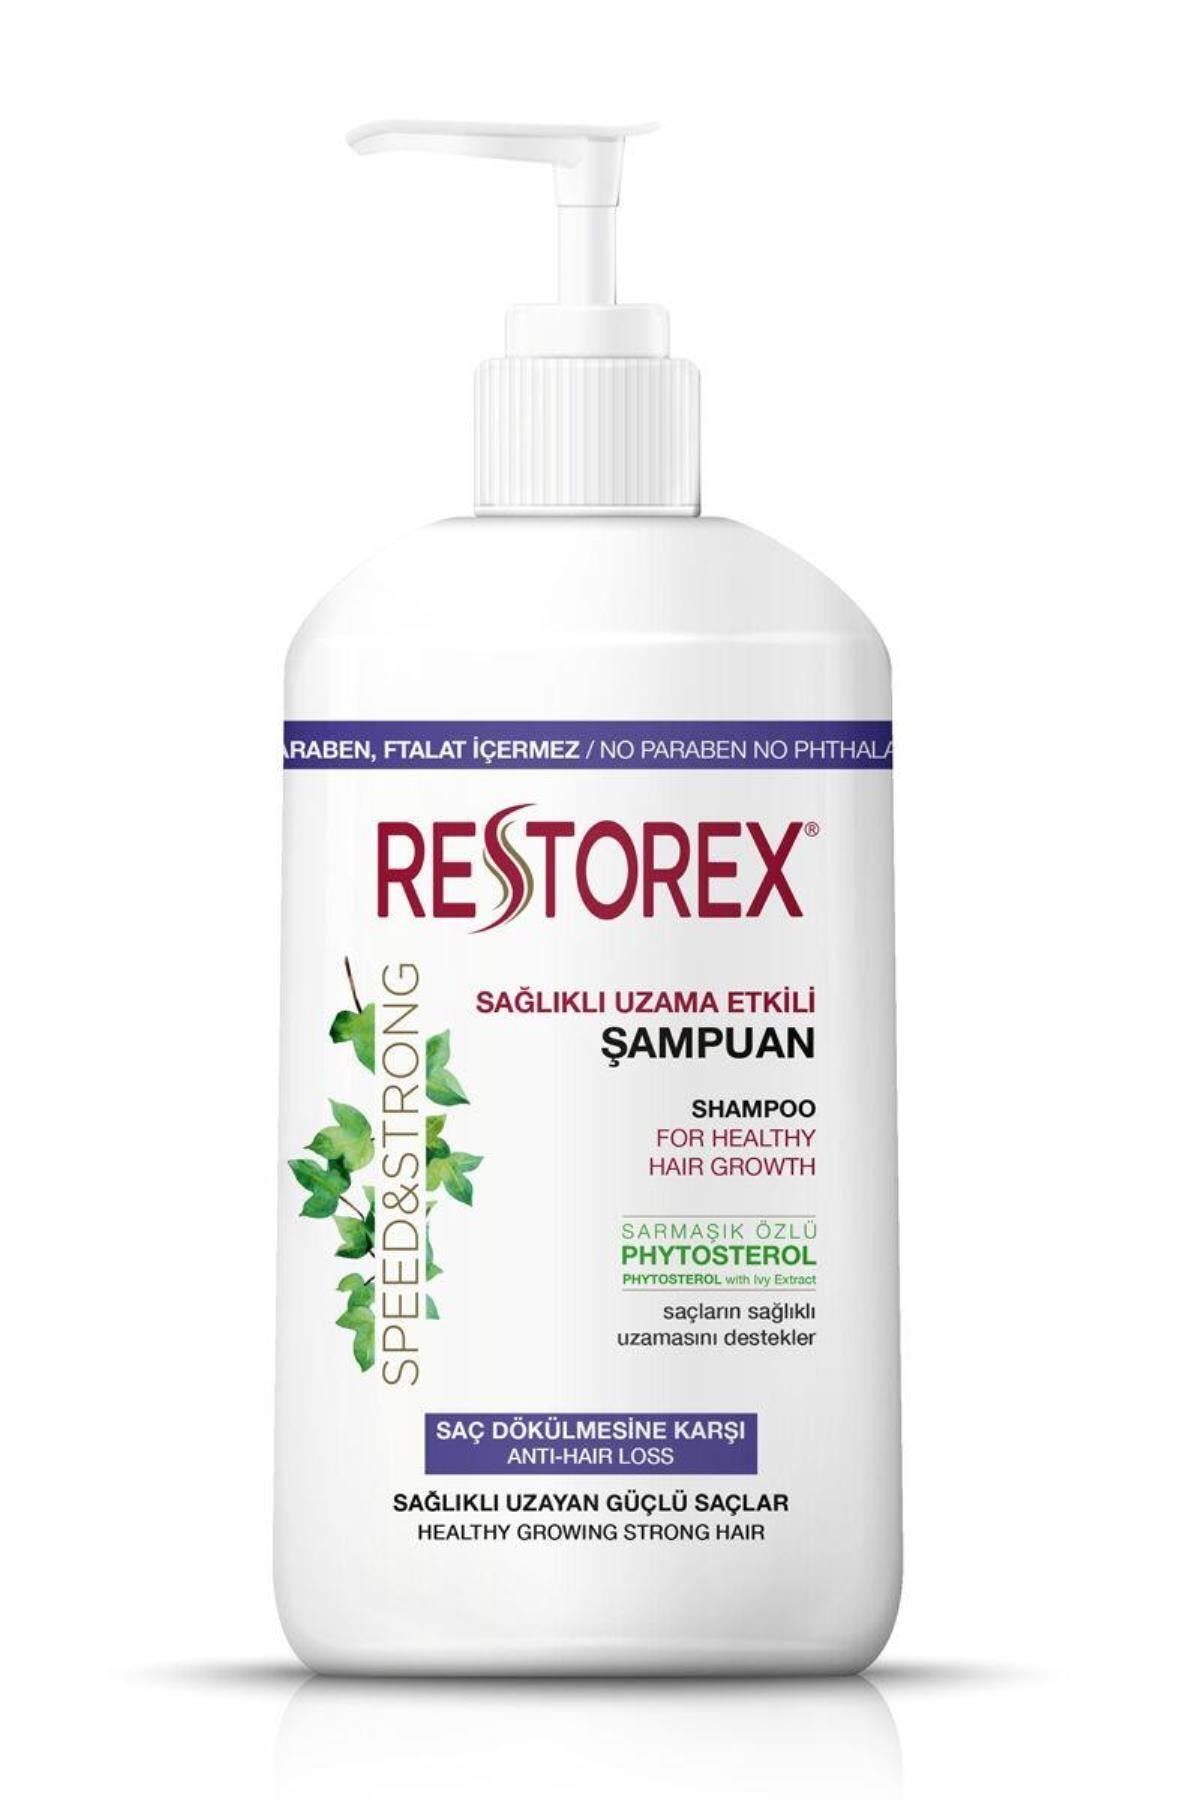 Restorex Saç Dökülmesine Karşı Ekstra Direnç Şampuanı 1000 Ml Marka: Kategori: Şampuan